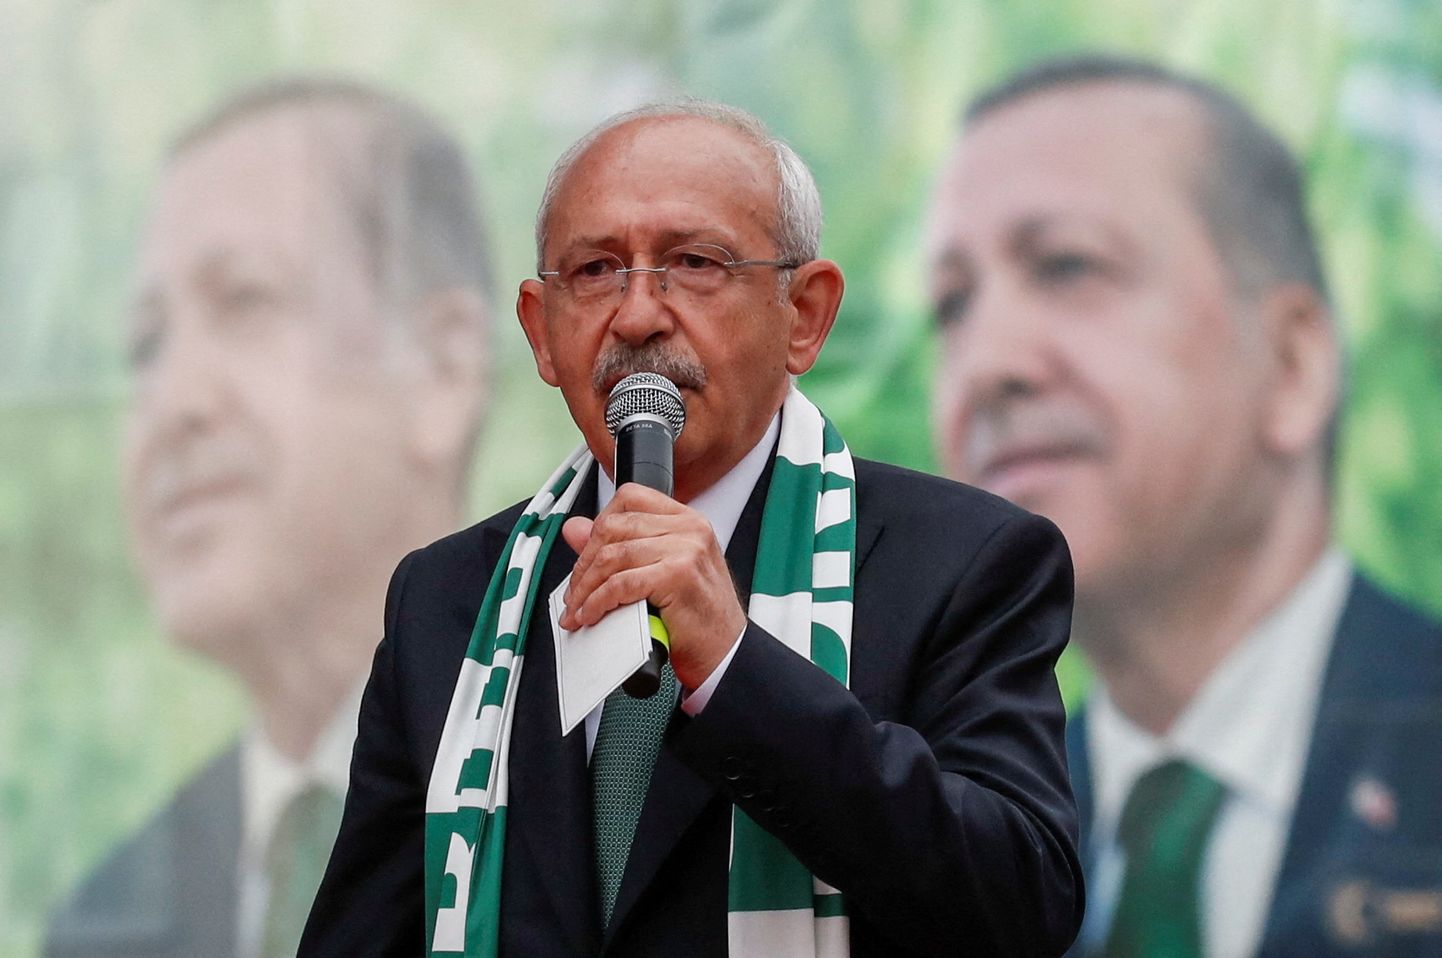 Кемаль Кылычдароглу выступает на митинге перед выборами президента Турции. На фоне заметны предвыборные плакаты действующего президента Тайипа Эрдогана. 11 мая 2023 года.